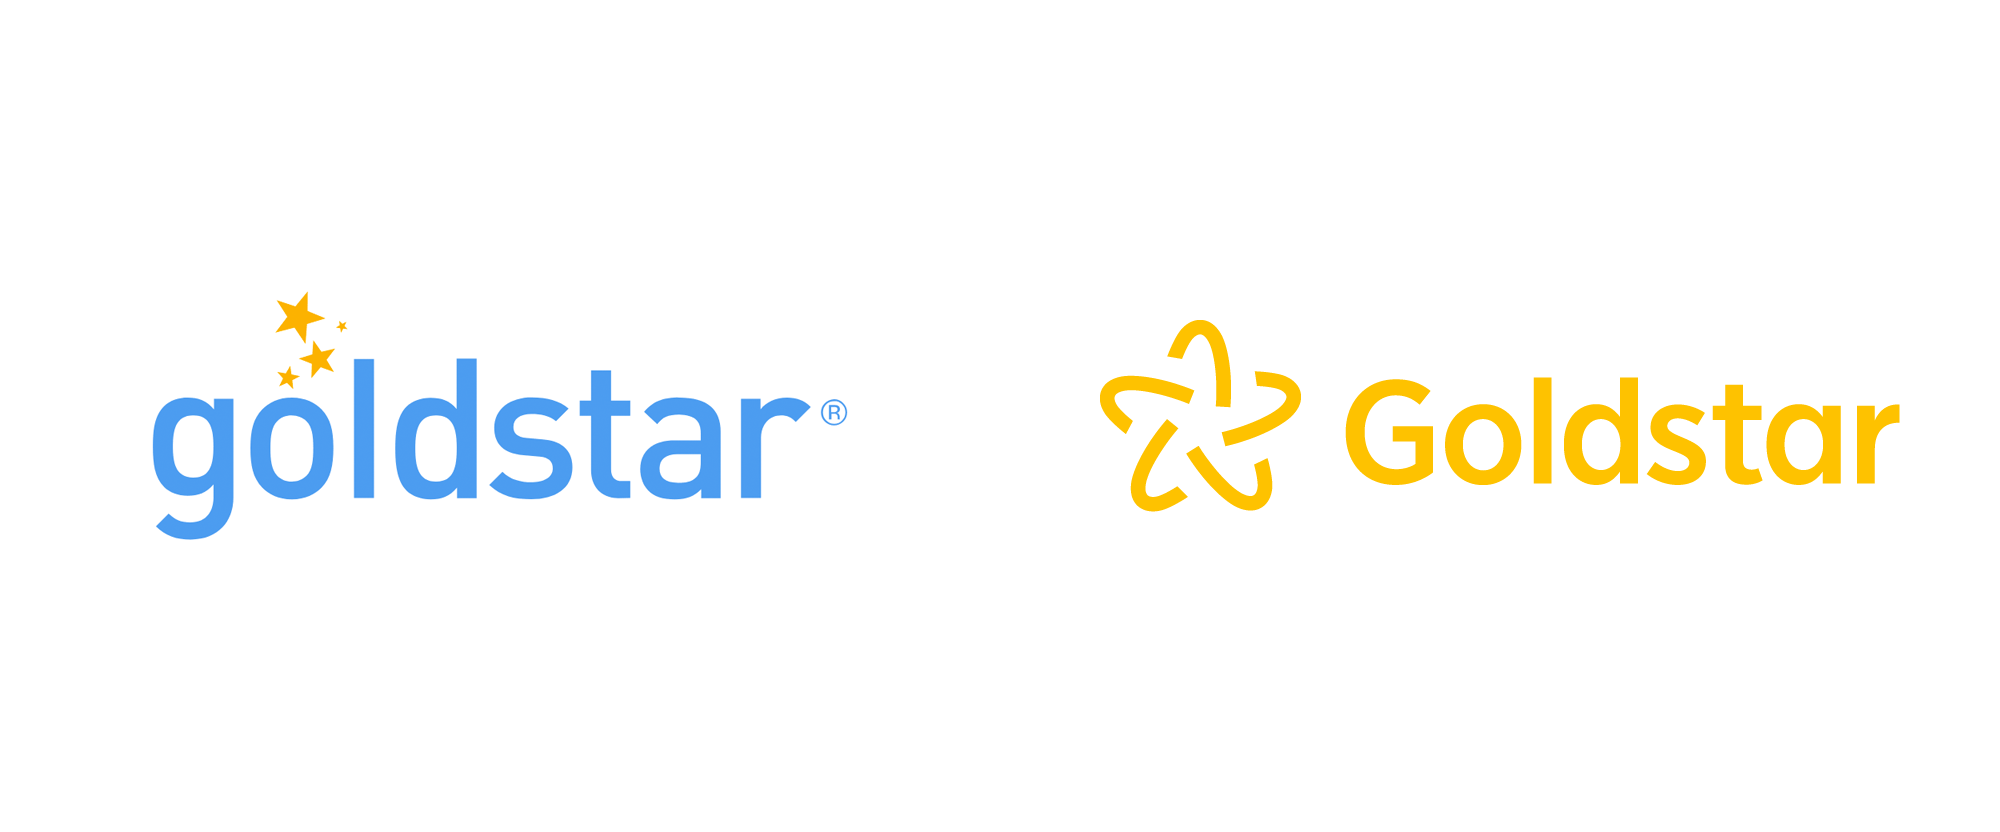 Gold Star Logo - Brand New: New Logo for Goldstar